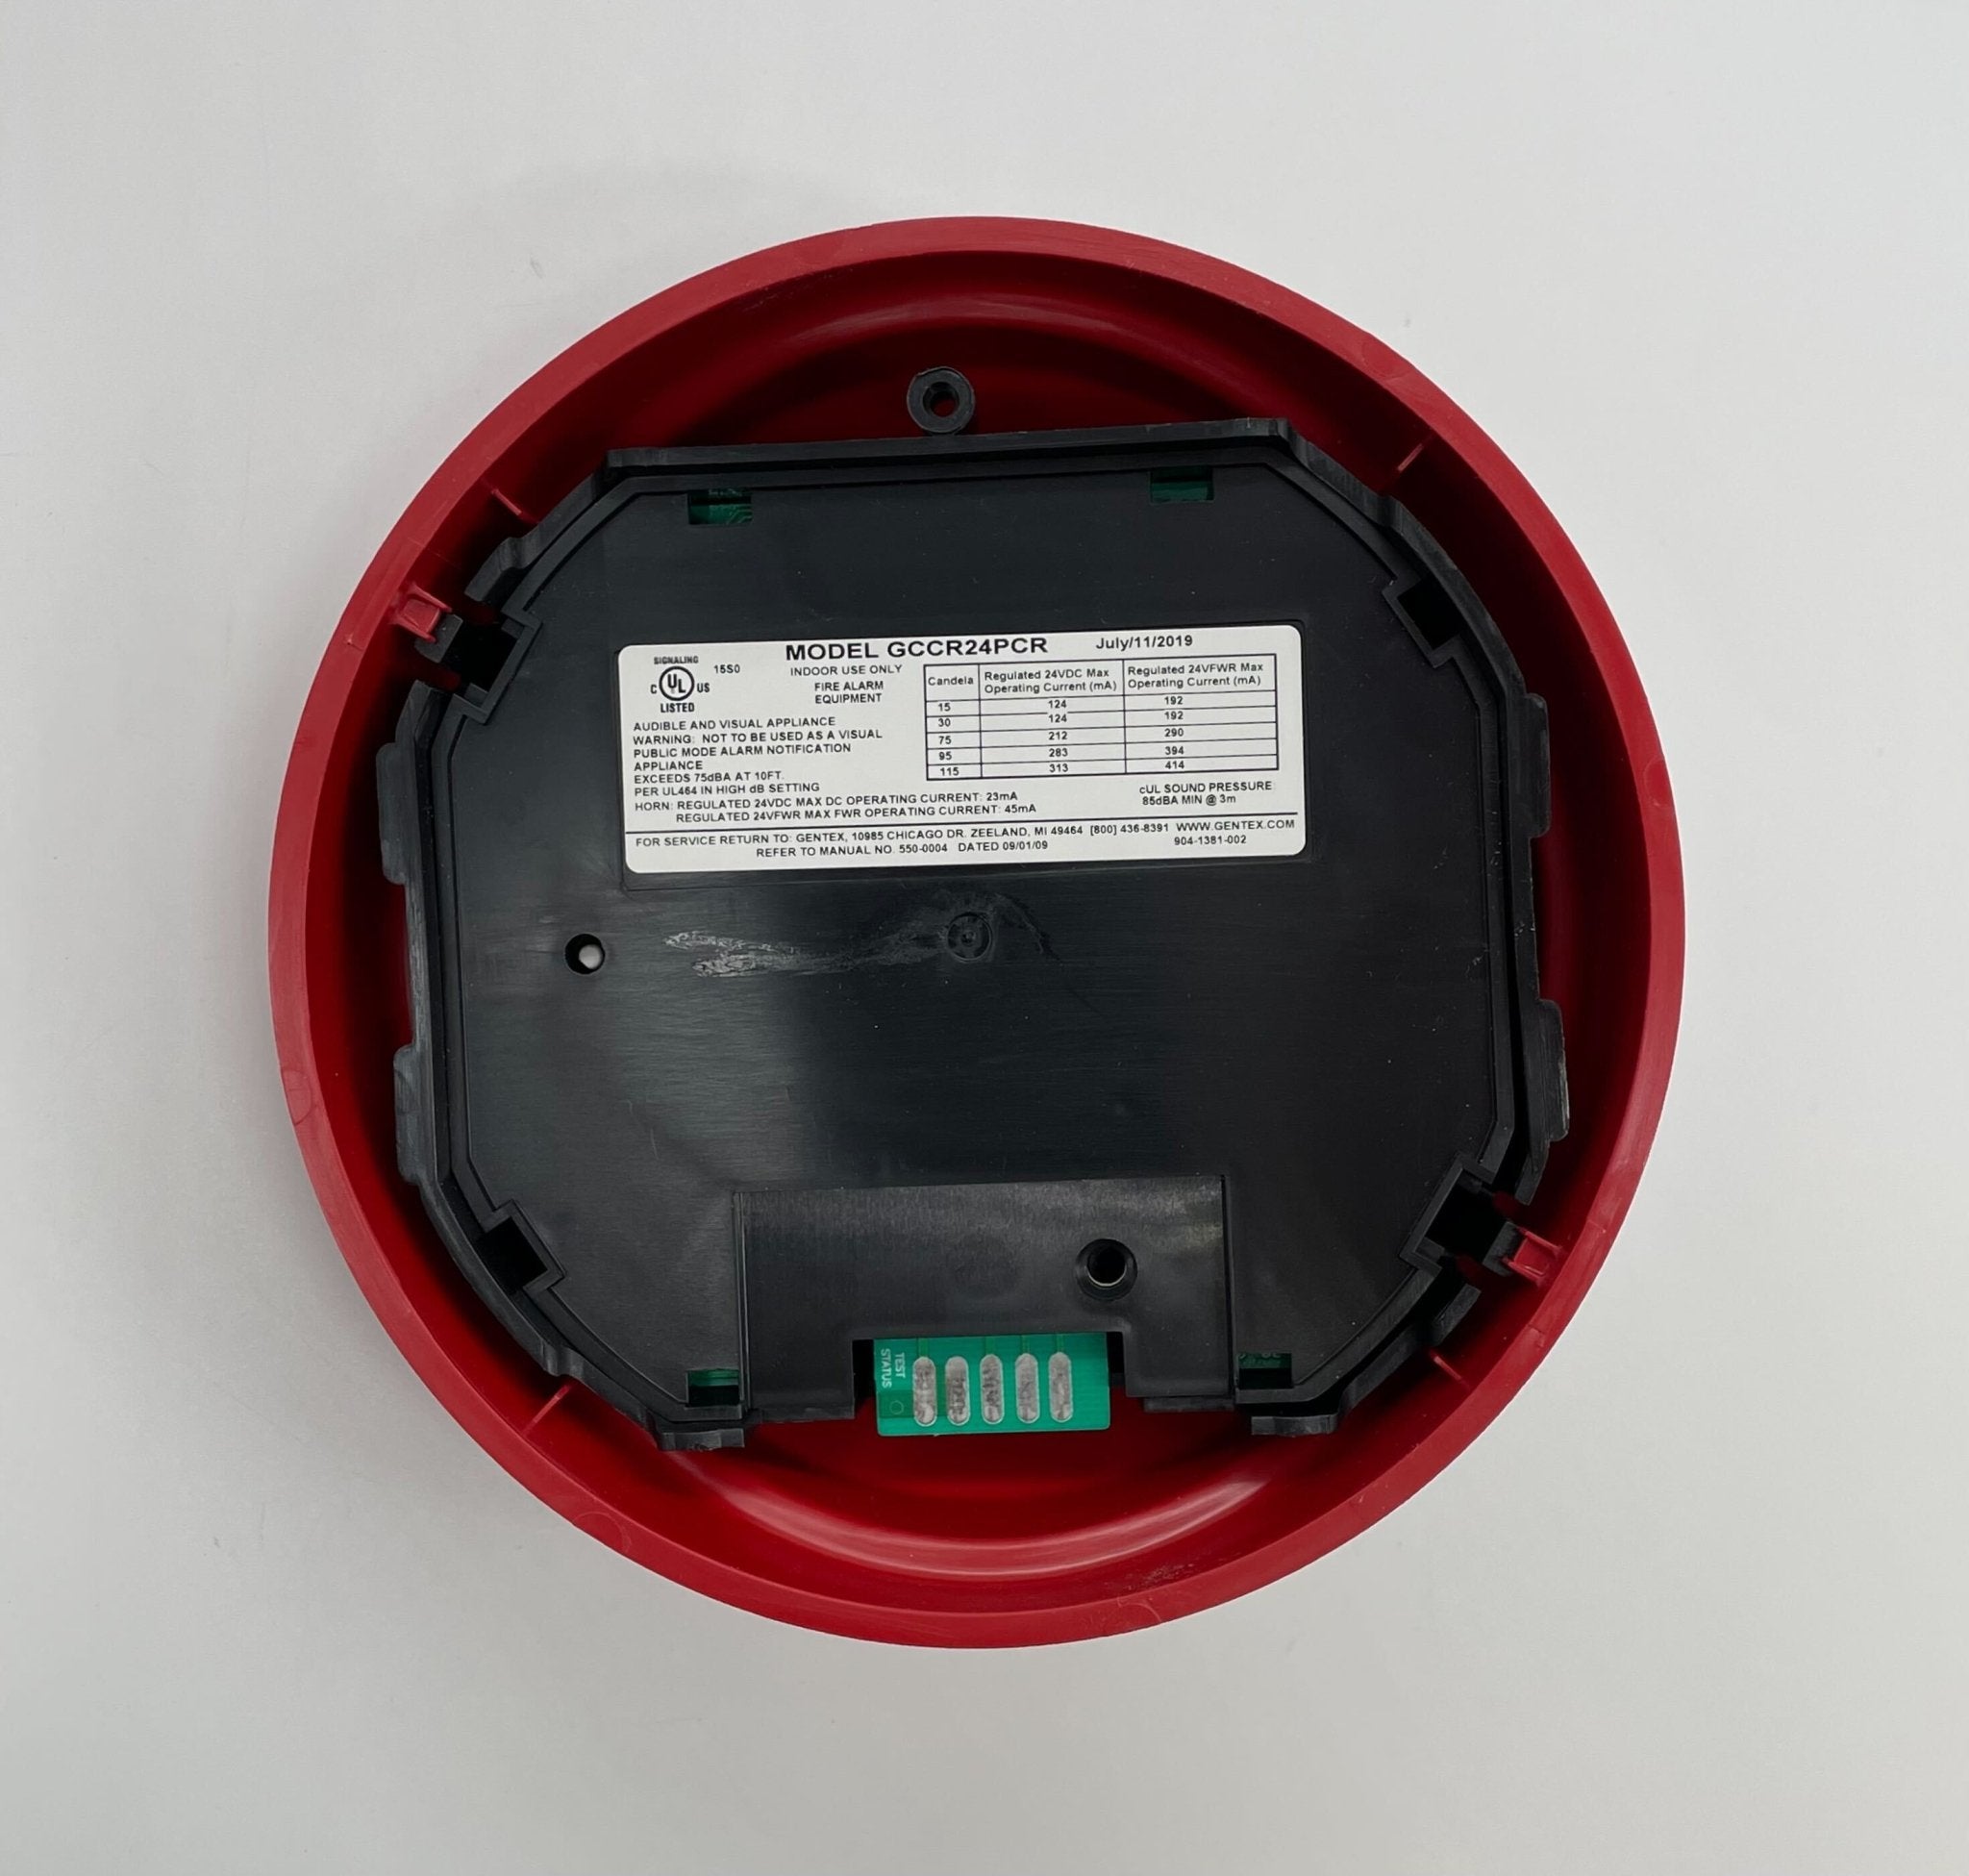 Gentex GCCR24PCR - The Fire Alarm Supplier